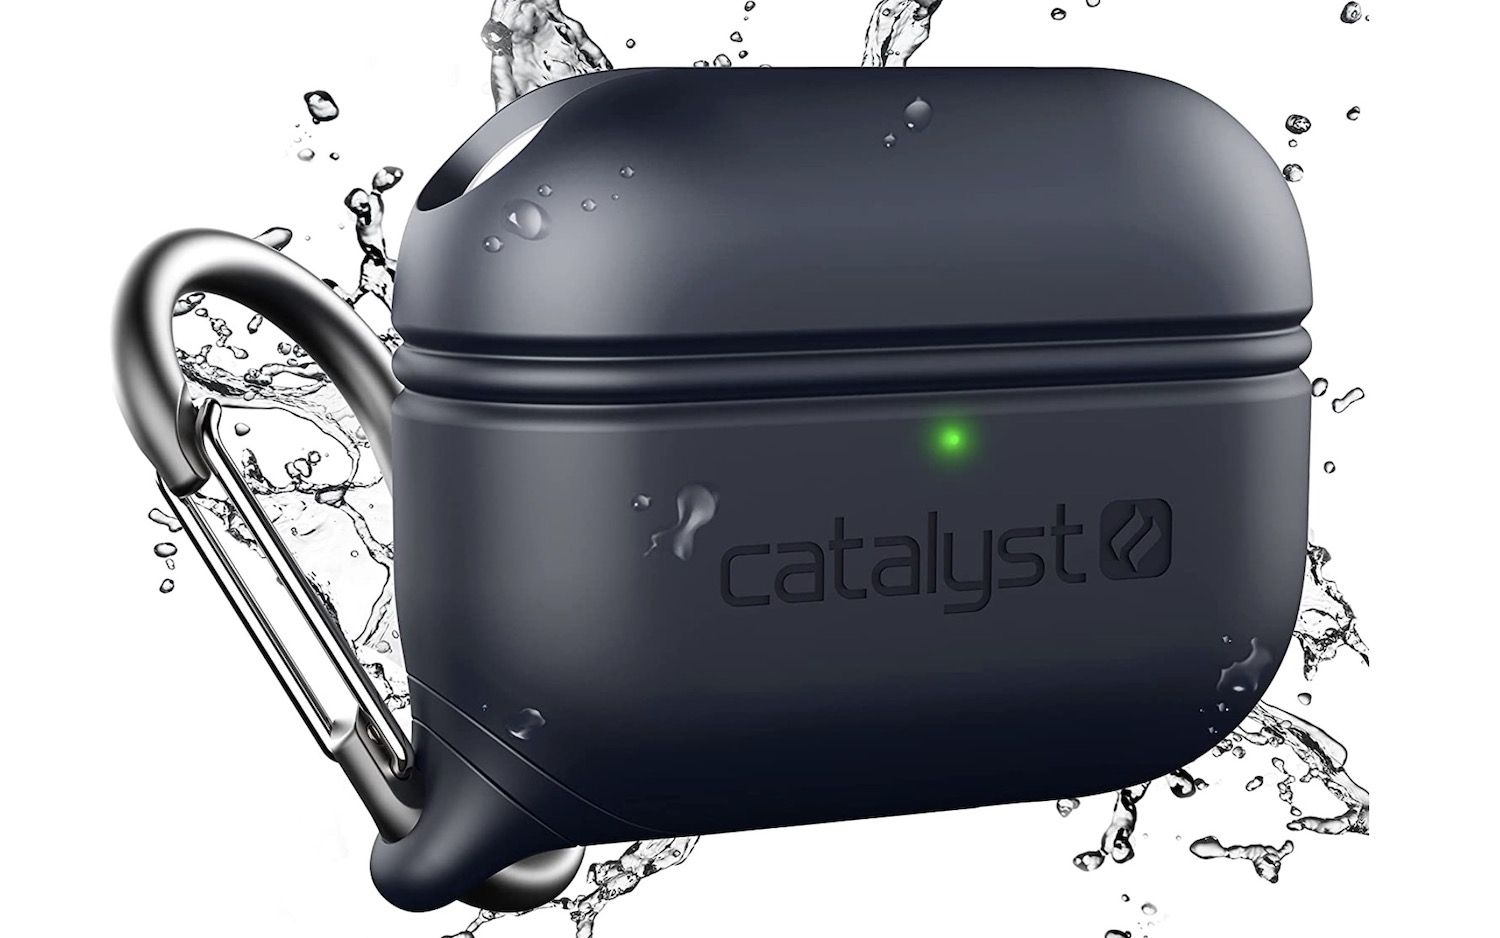 Catalyst waterproof case